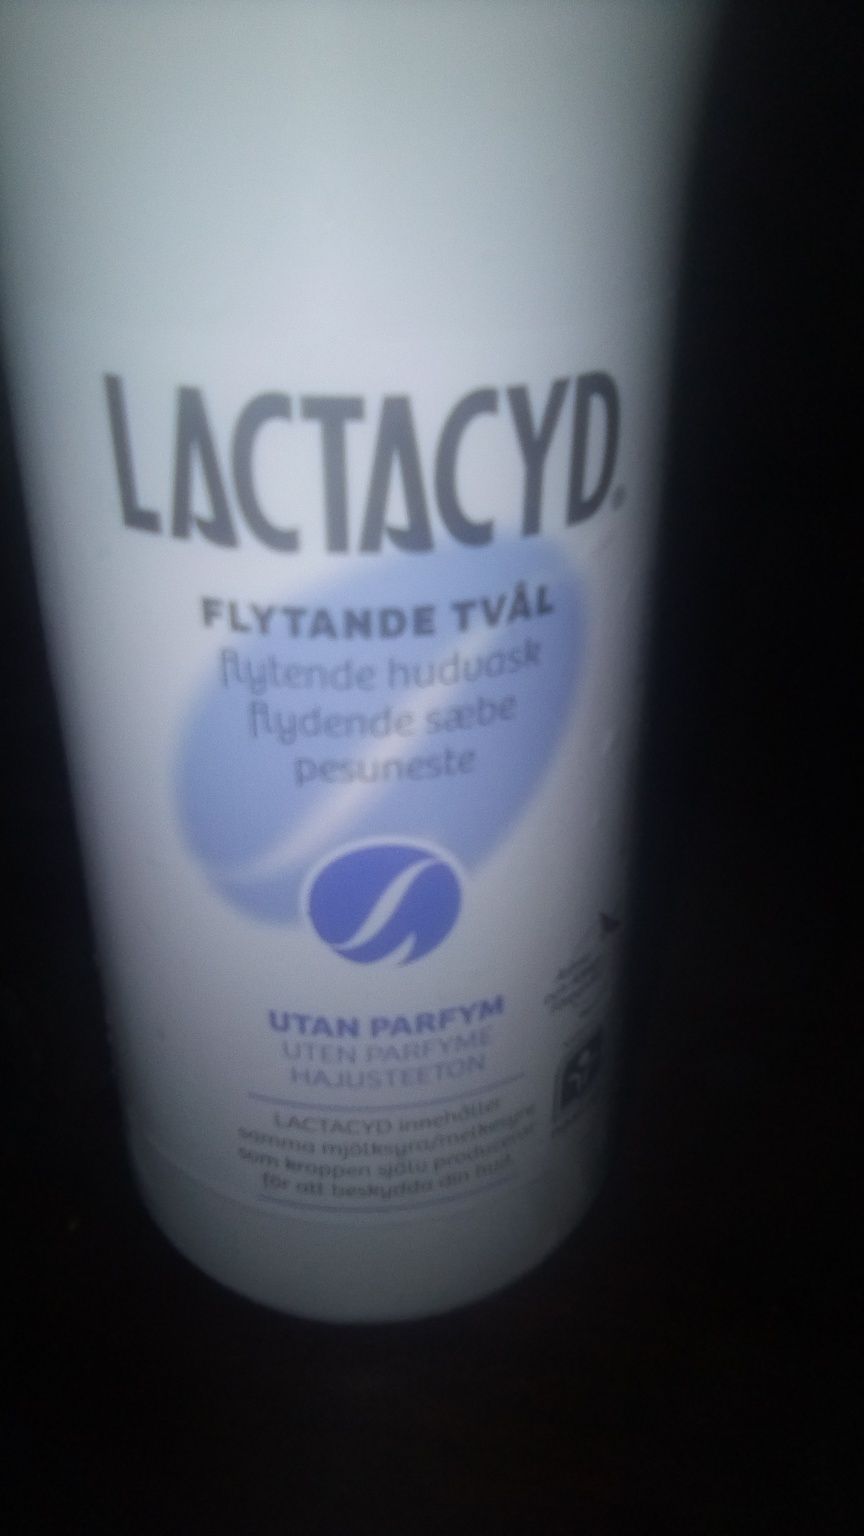 Lactacylg жидкое мыло для интимной гигиены, для нежной кожи 500 ml